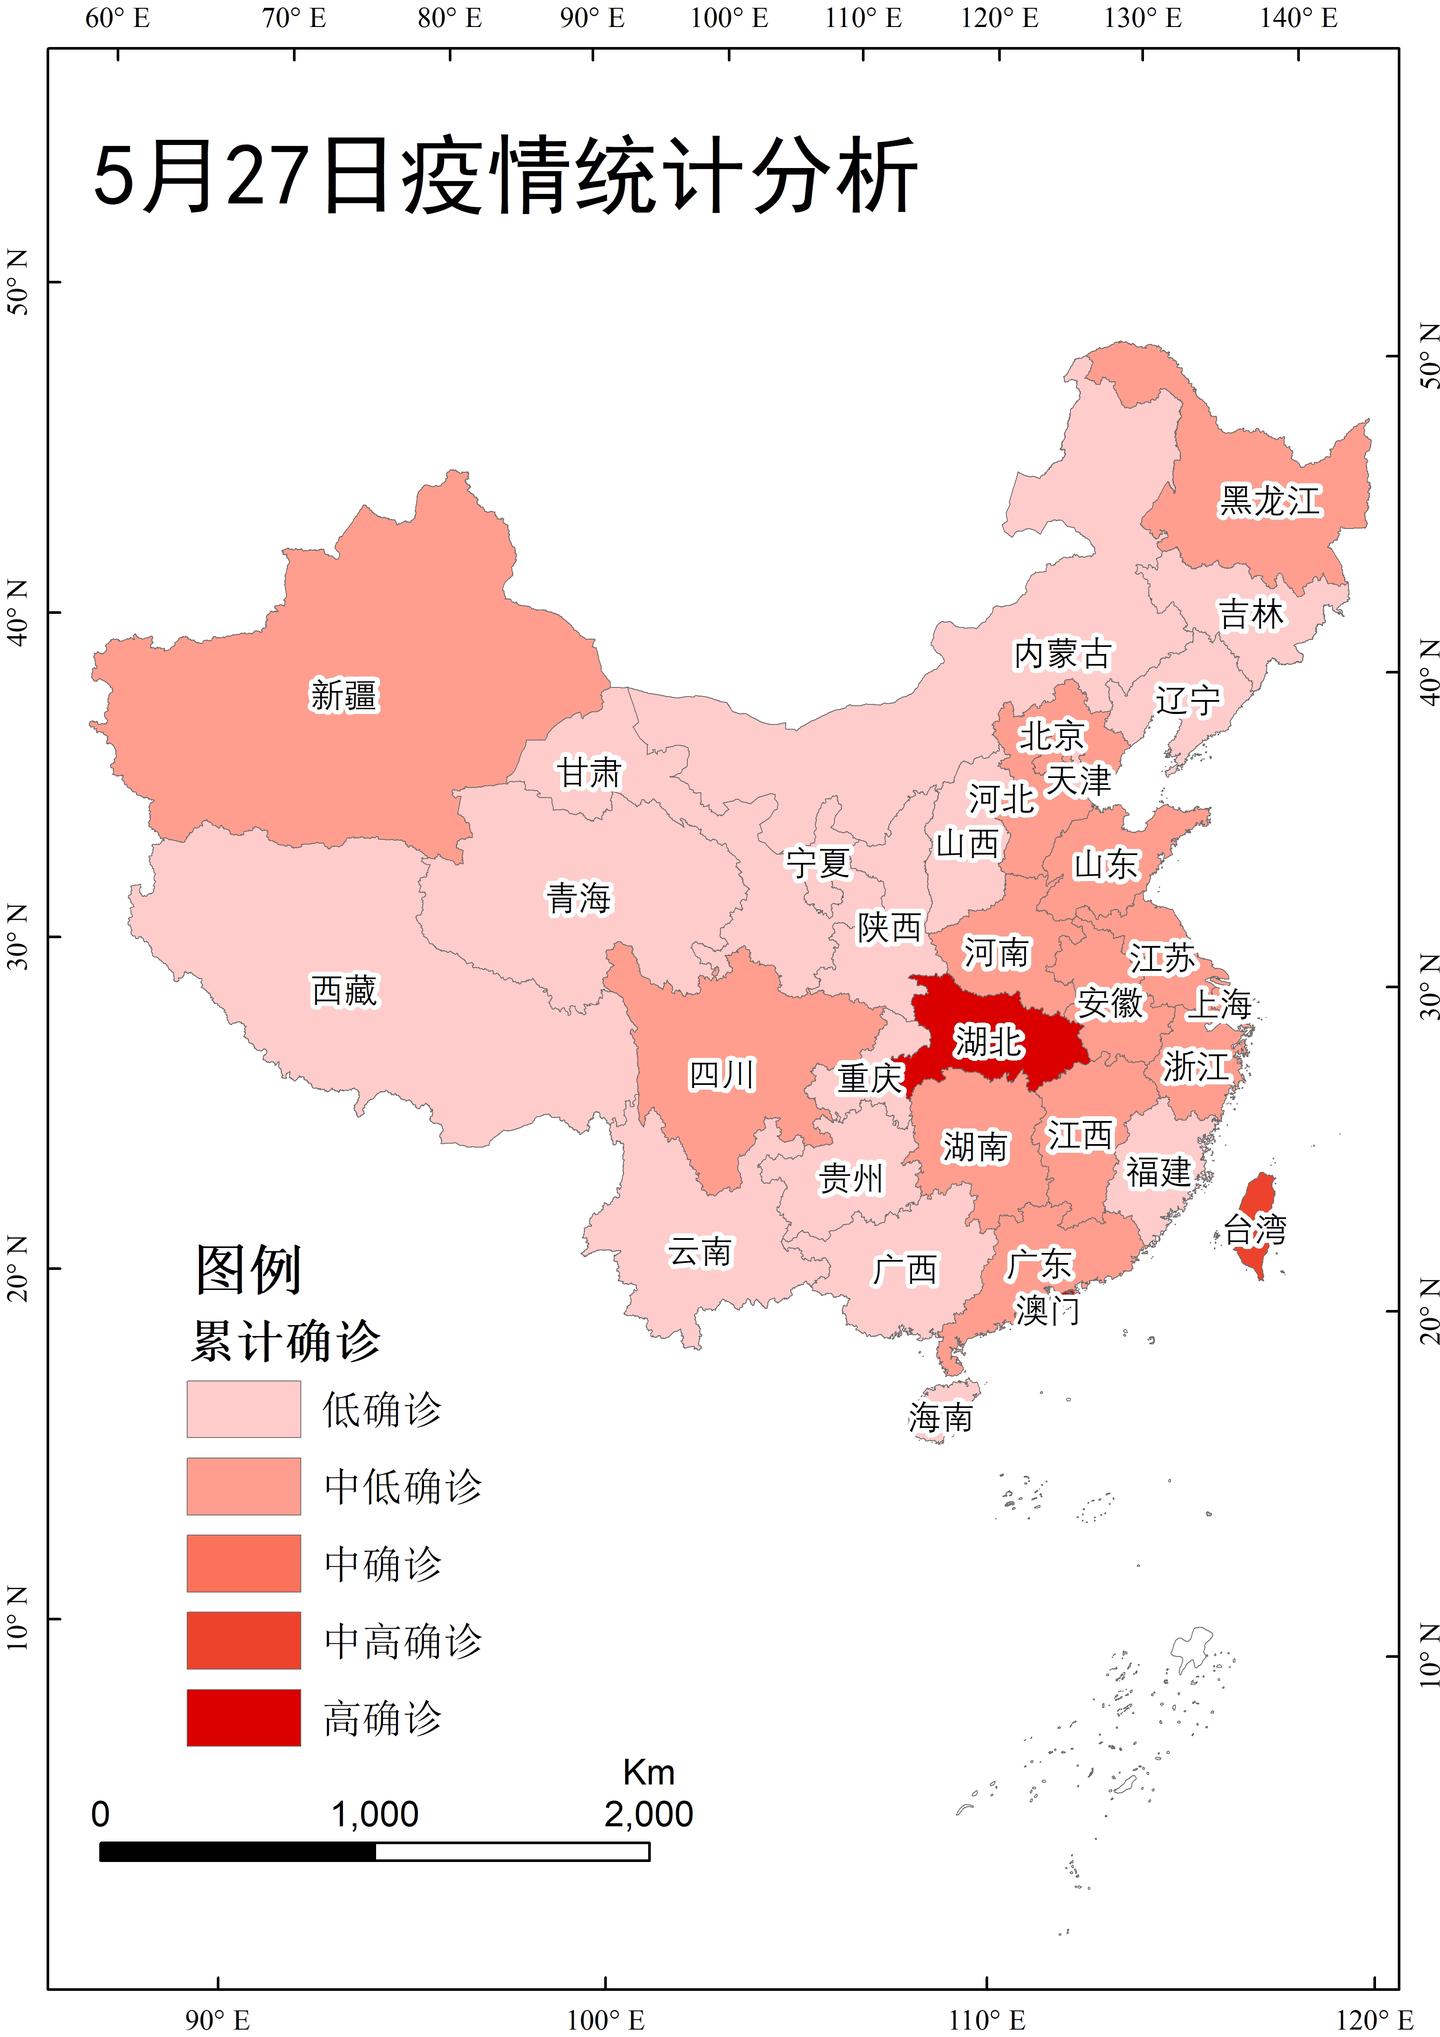 准备数据 这里我们使用的中国行政区划与5月27日统计的国内疫情数据